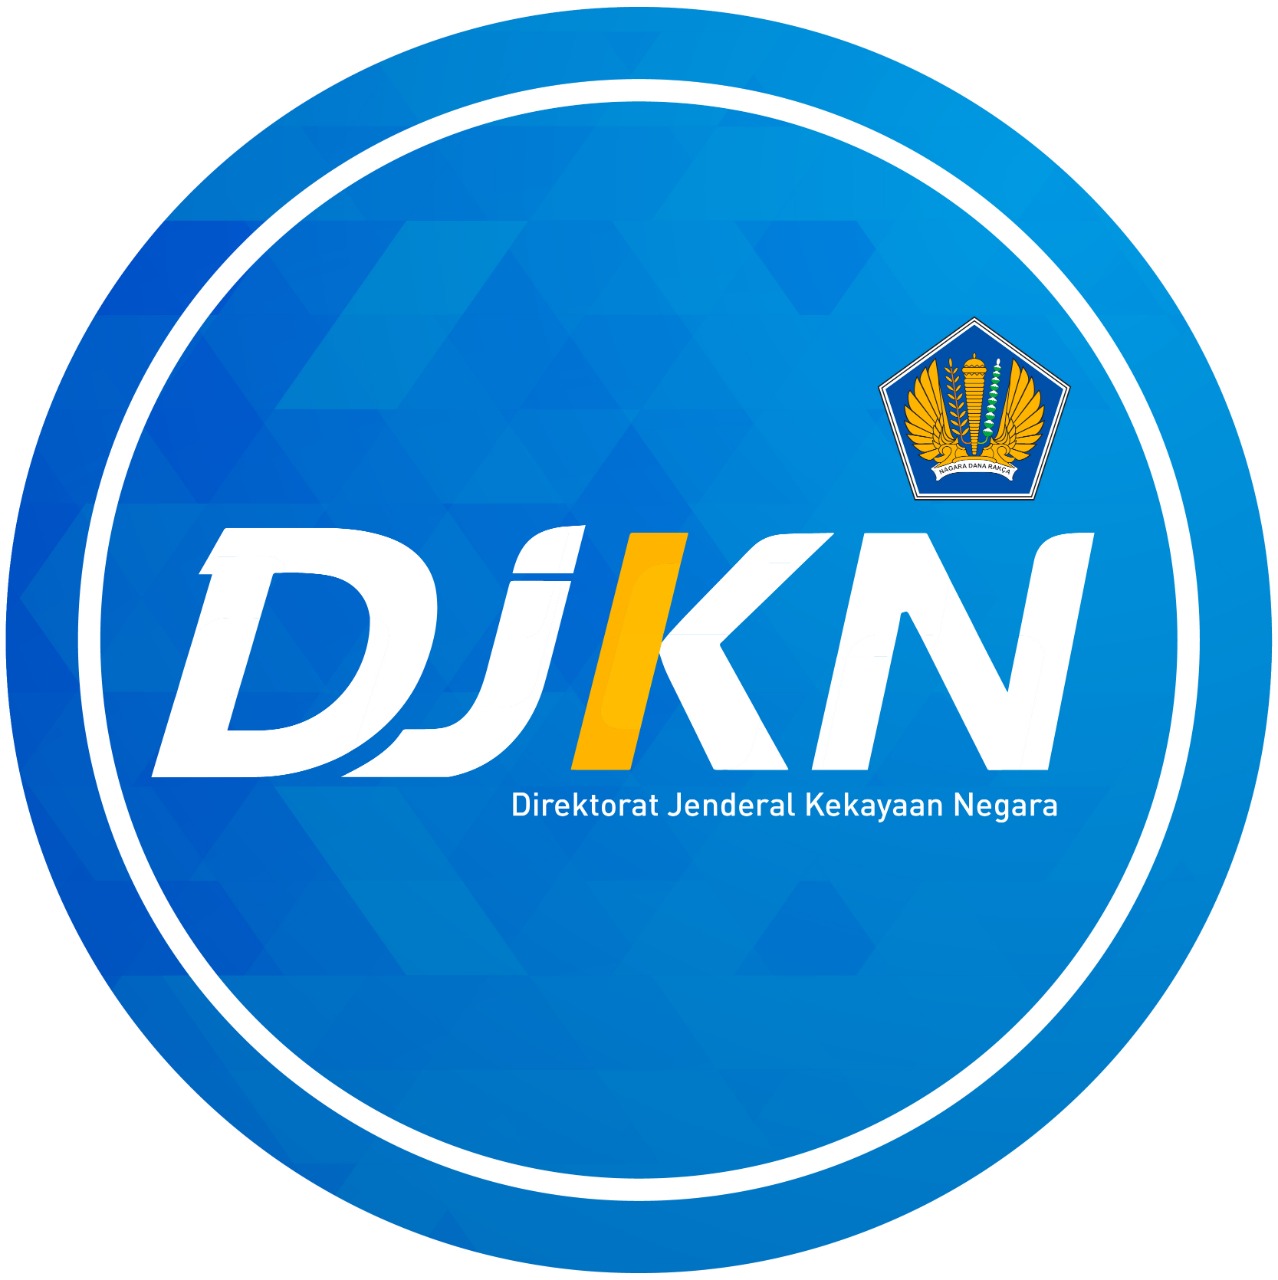 Tingkatkan Peran DJKN sebagai Distinguished Asset Manager Menuju Tata Kelola BMN yang tertib, efisien, efektif, dan optimal.